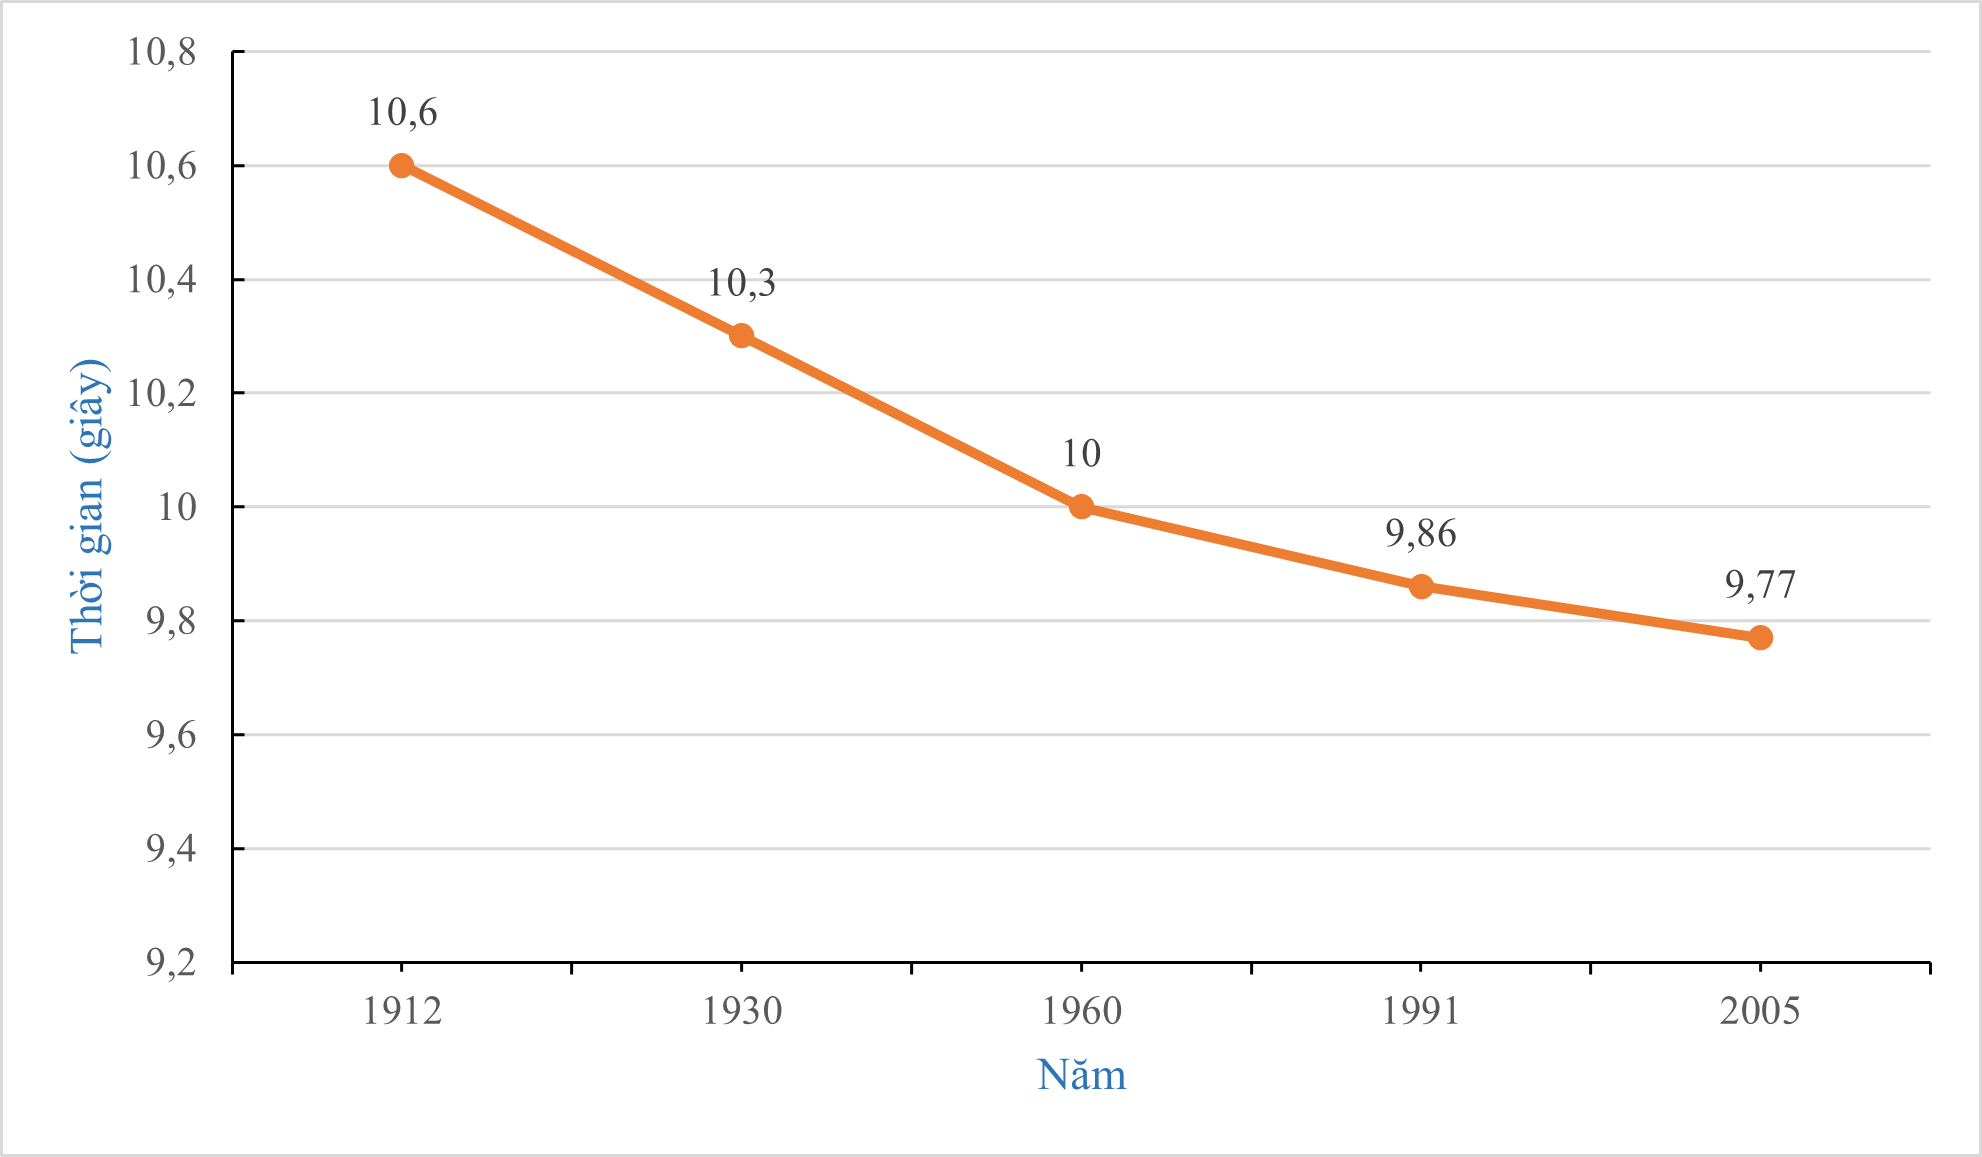 Biểu đồ dưới đây cho biết kỉ lục thế giới về thời gian chạy cự li 100 m trong các năm từ 1912 đến 2005:Từ năm 1991 đến 2005, kỉ lục thế giới về chạy cự li 100 m đã giảm được bao nhiêu giây? (ảnh 1)